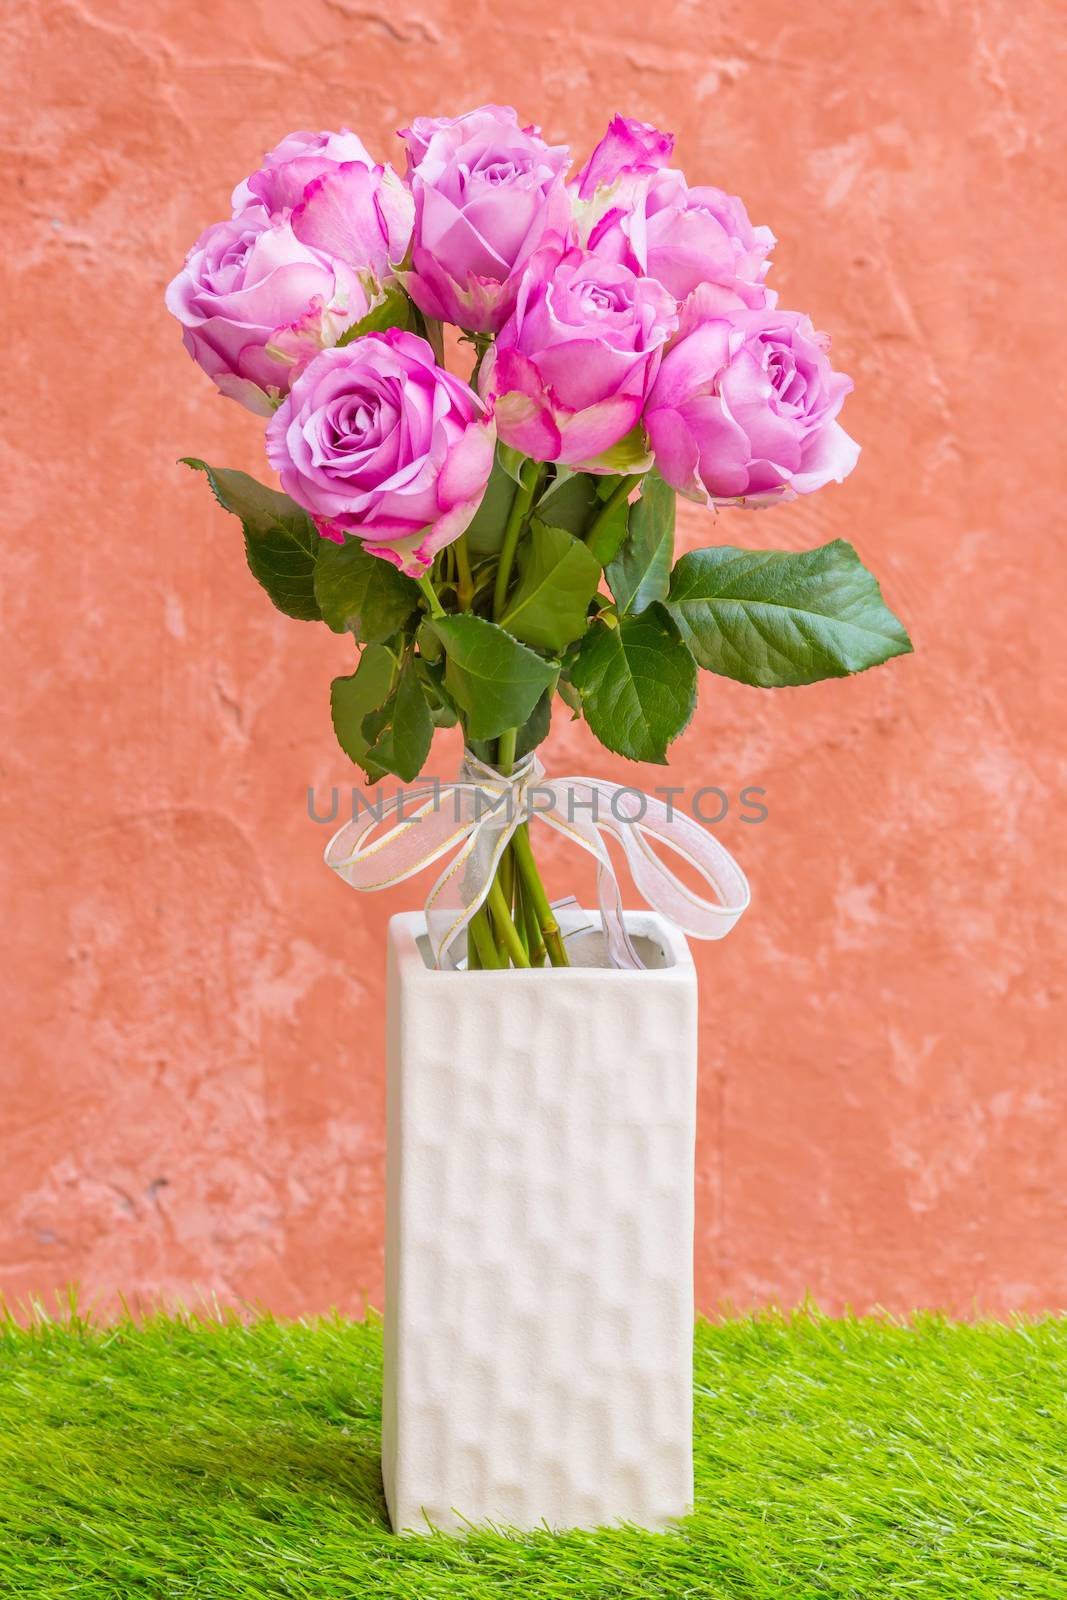 Violet rose in vase by smuay